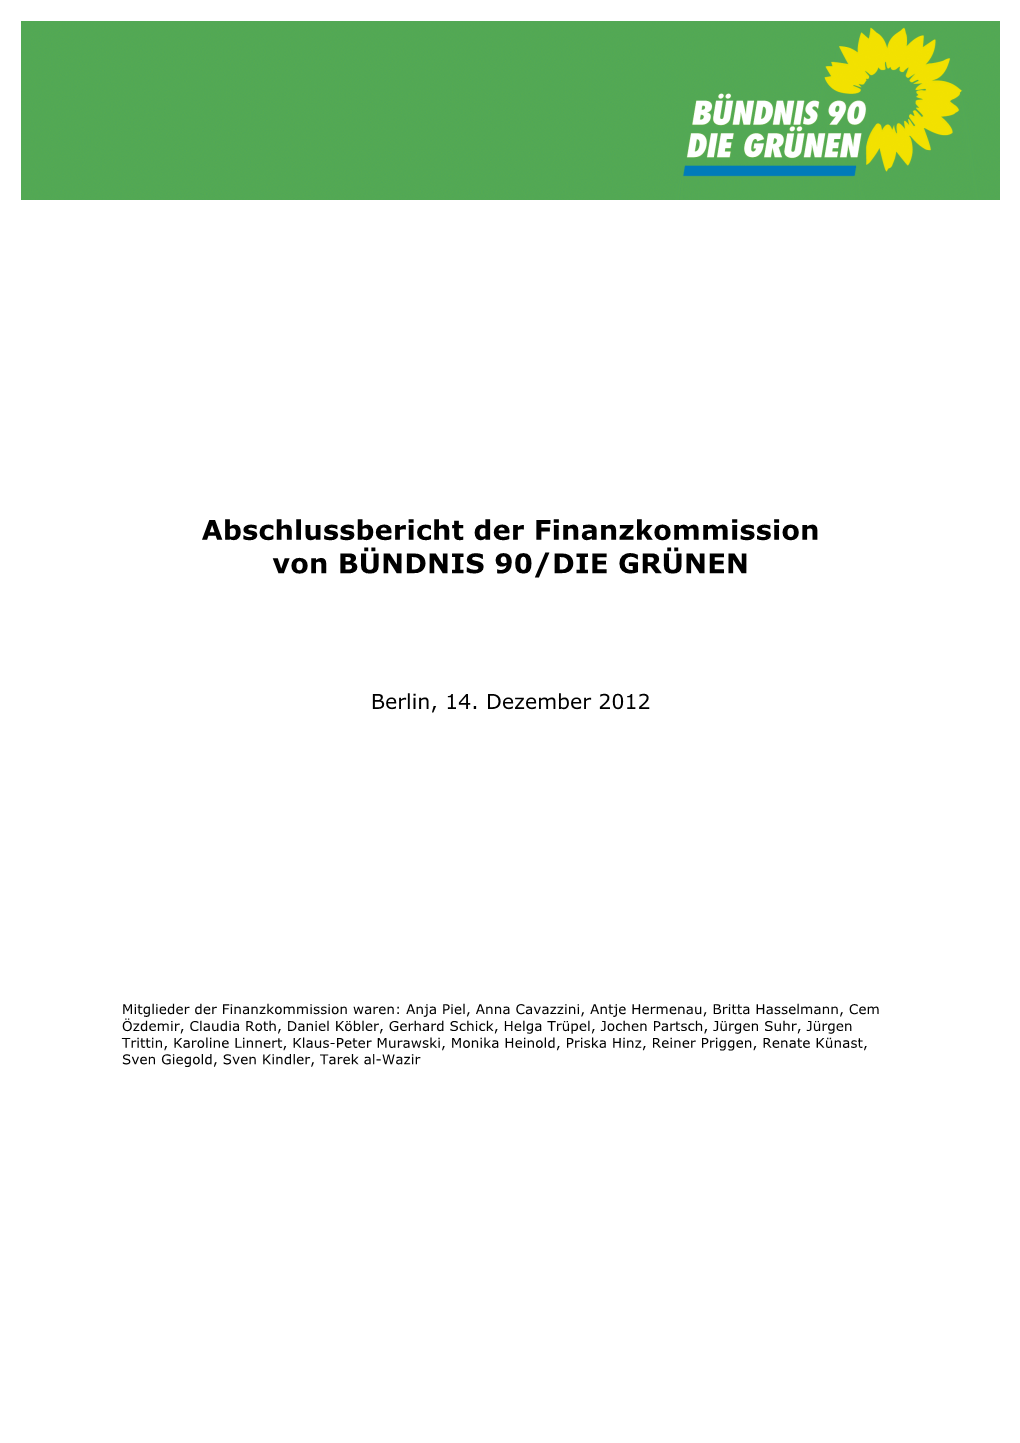 Abschlussbericht Der Finanzkommission Von BÜNDNIS 90/DIE GRÜNEN